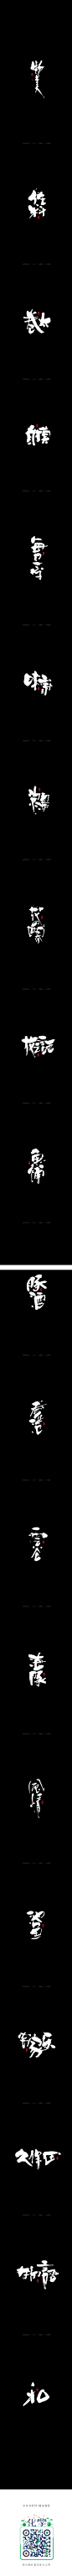 日式书法字体-字体传奇网-中国首个字体品牌设计师交流网